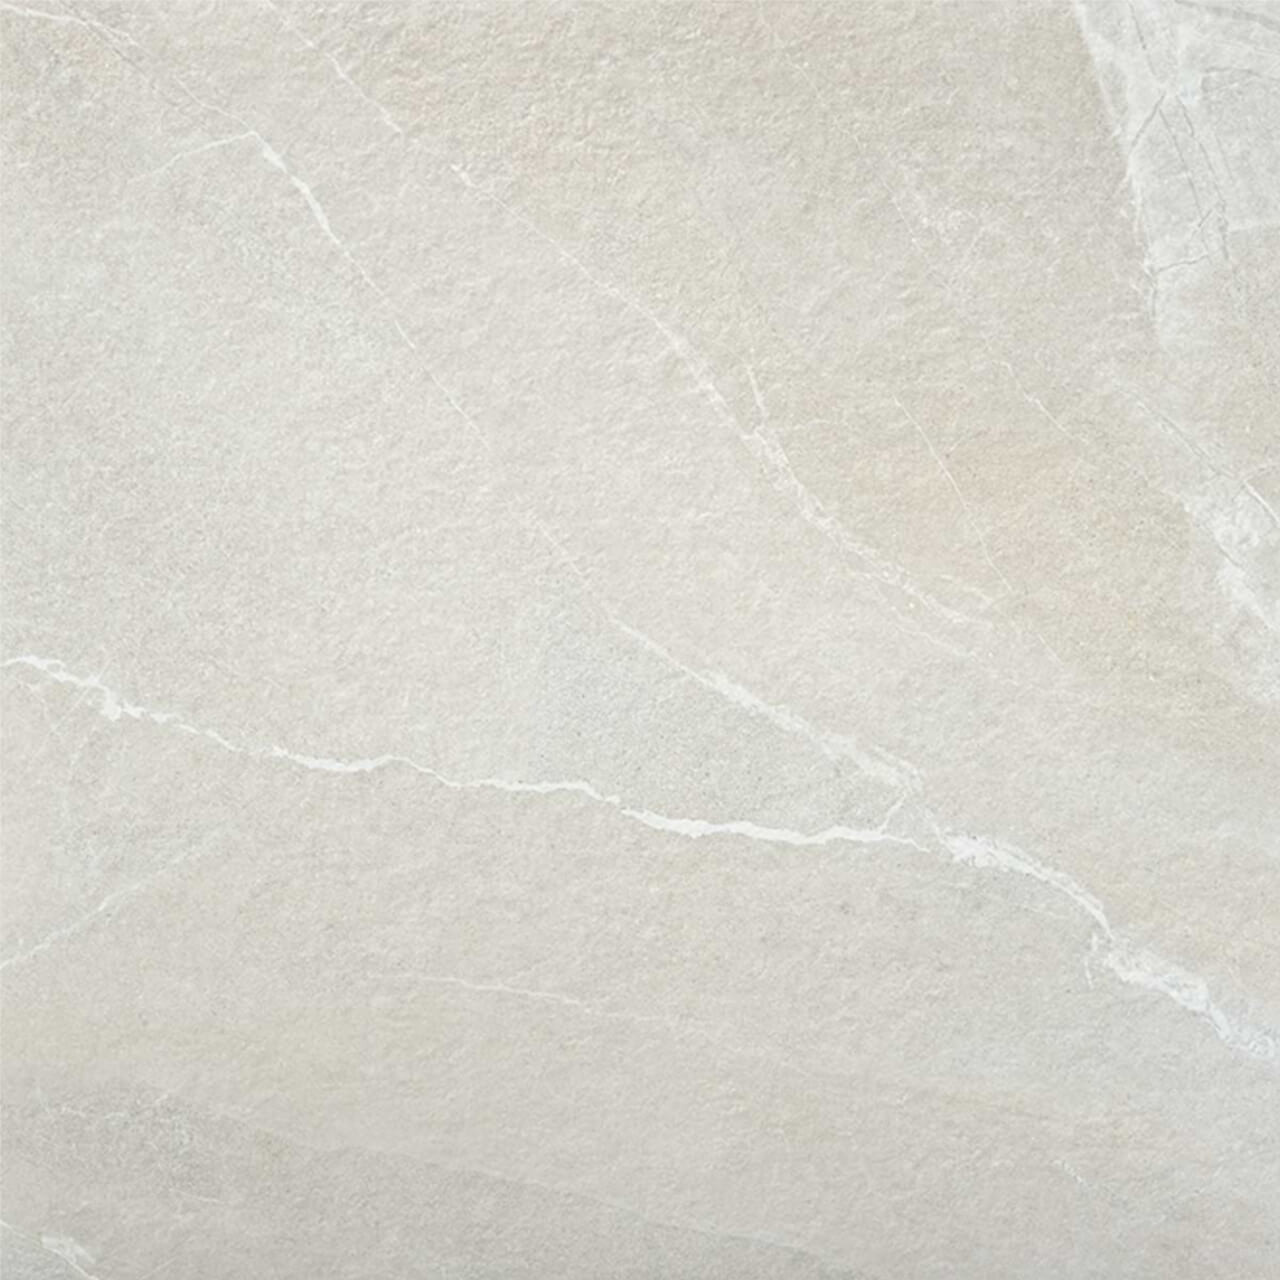 Photograph of 100x100cm Bodo White tile